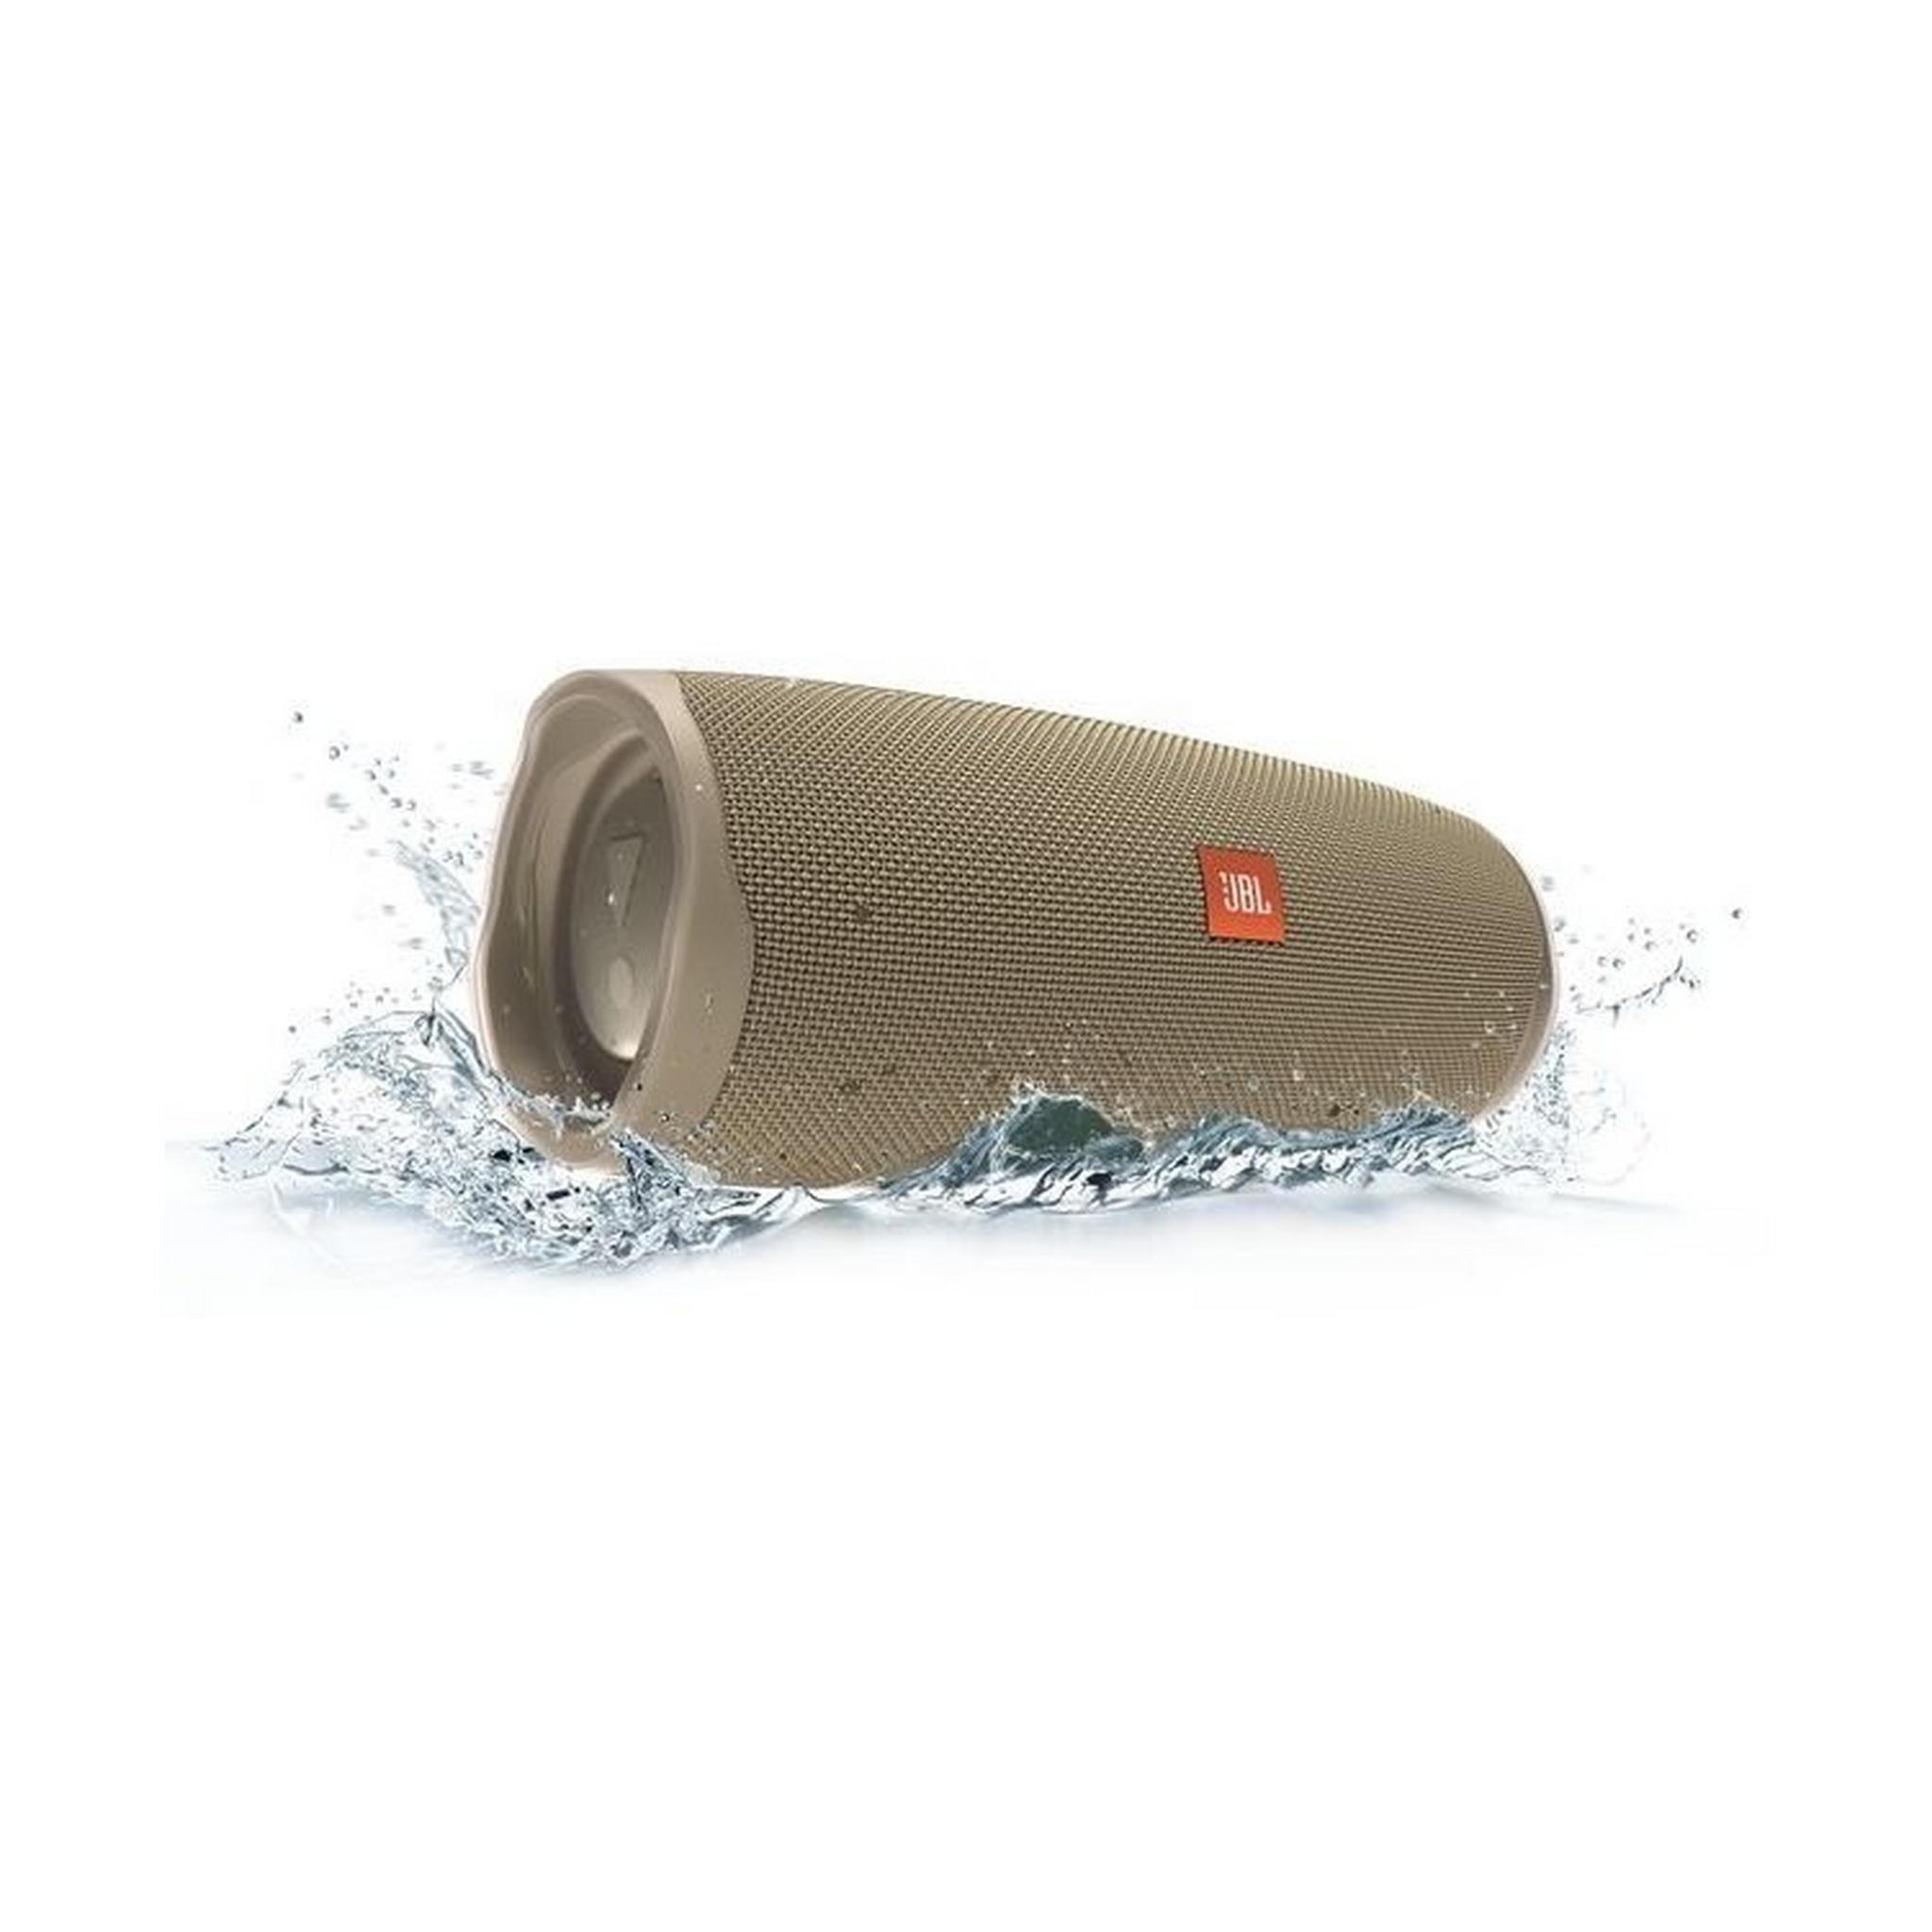 JBL Charge 4 Waterproof Portable Bluetooth Speaker - Sand